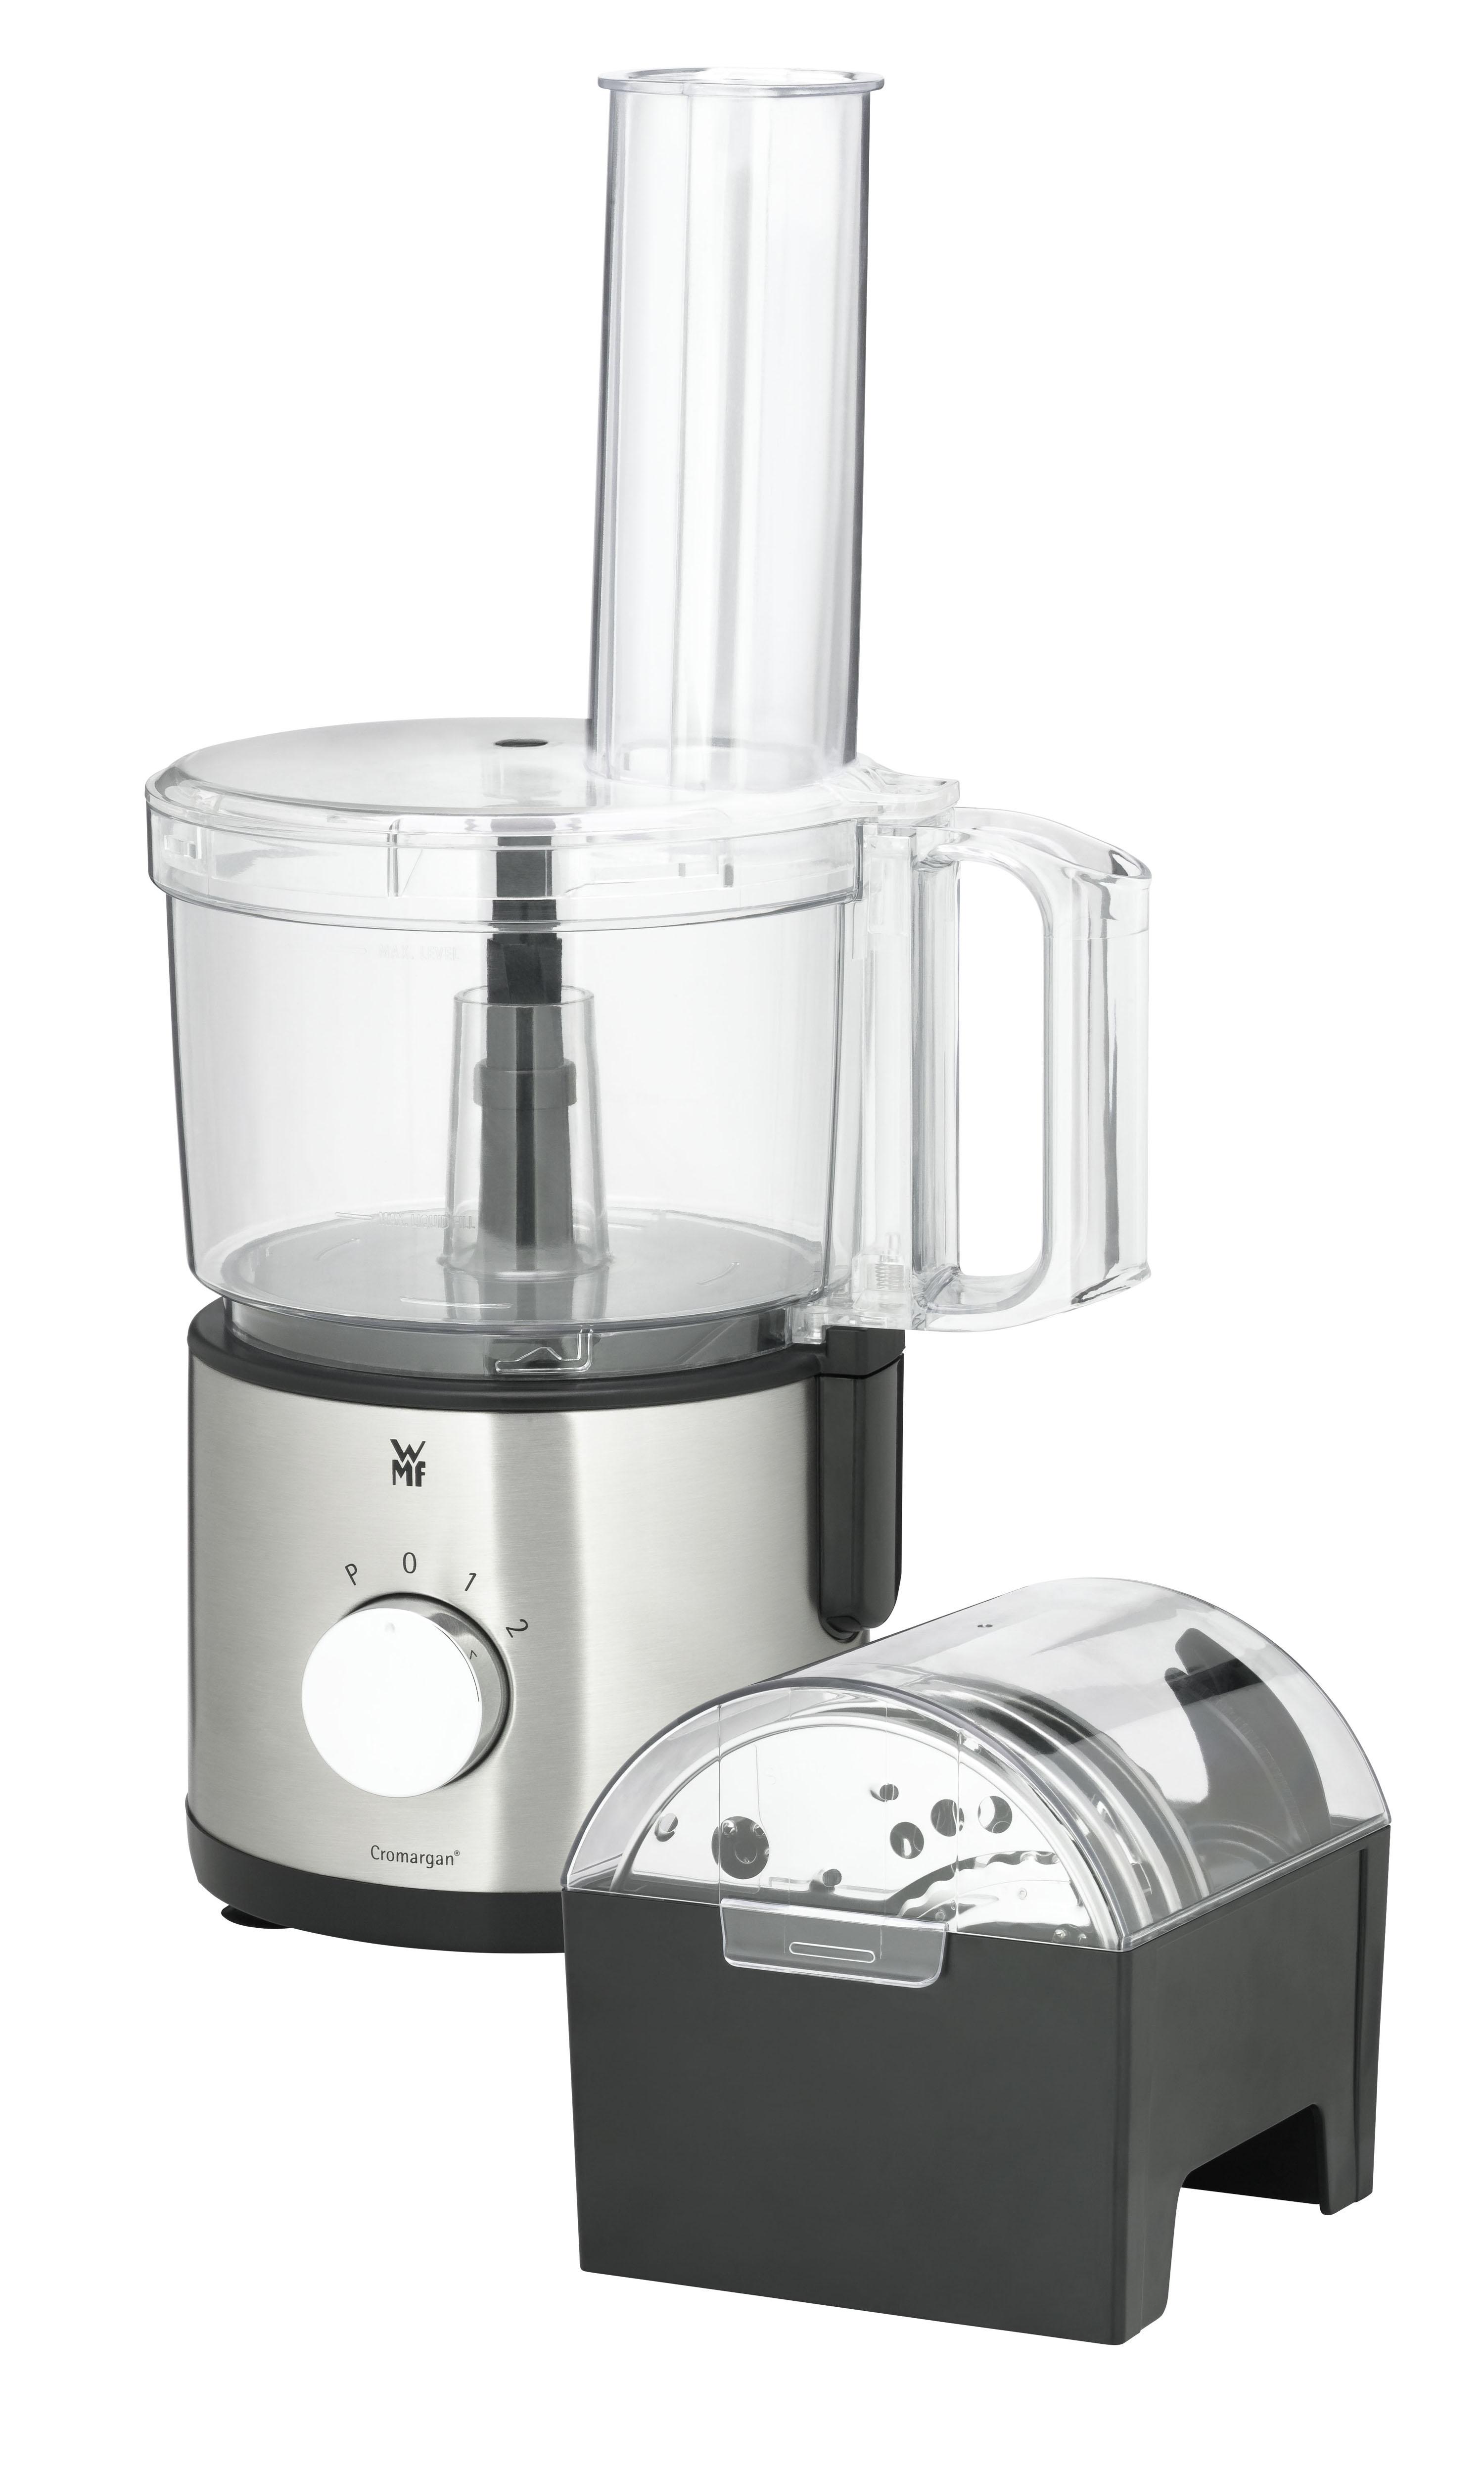 WMF Kompakt-Küchenmaschine Kult X Edition 500 Watt Schüssel 2 Liter